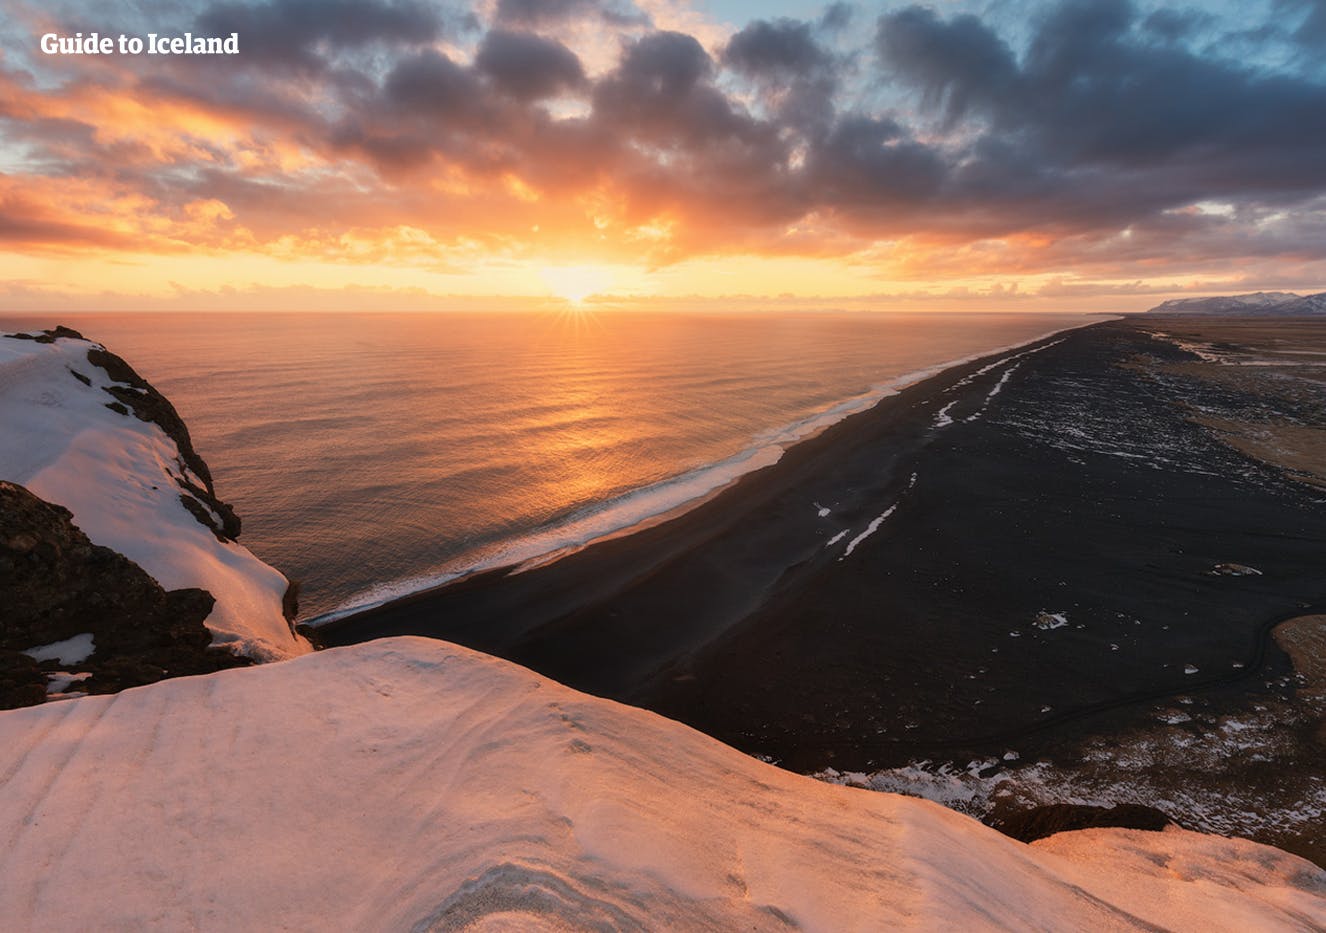 In inverno, la costa meridionale assume uno charme unico, con un bellissimo contrasto tra la neve bianca e la sabbia nera.